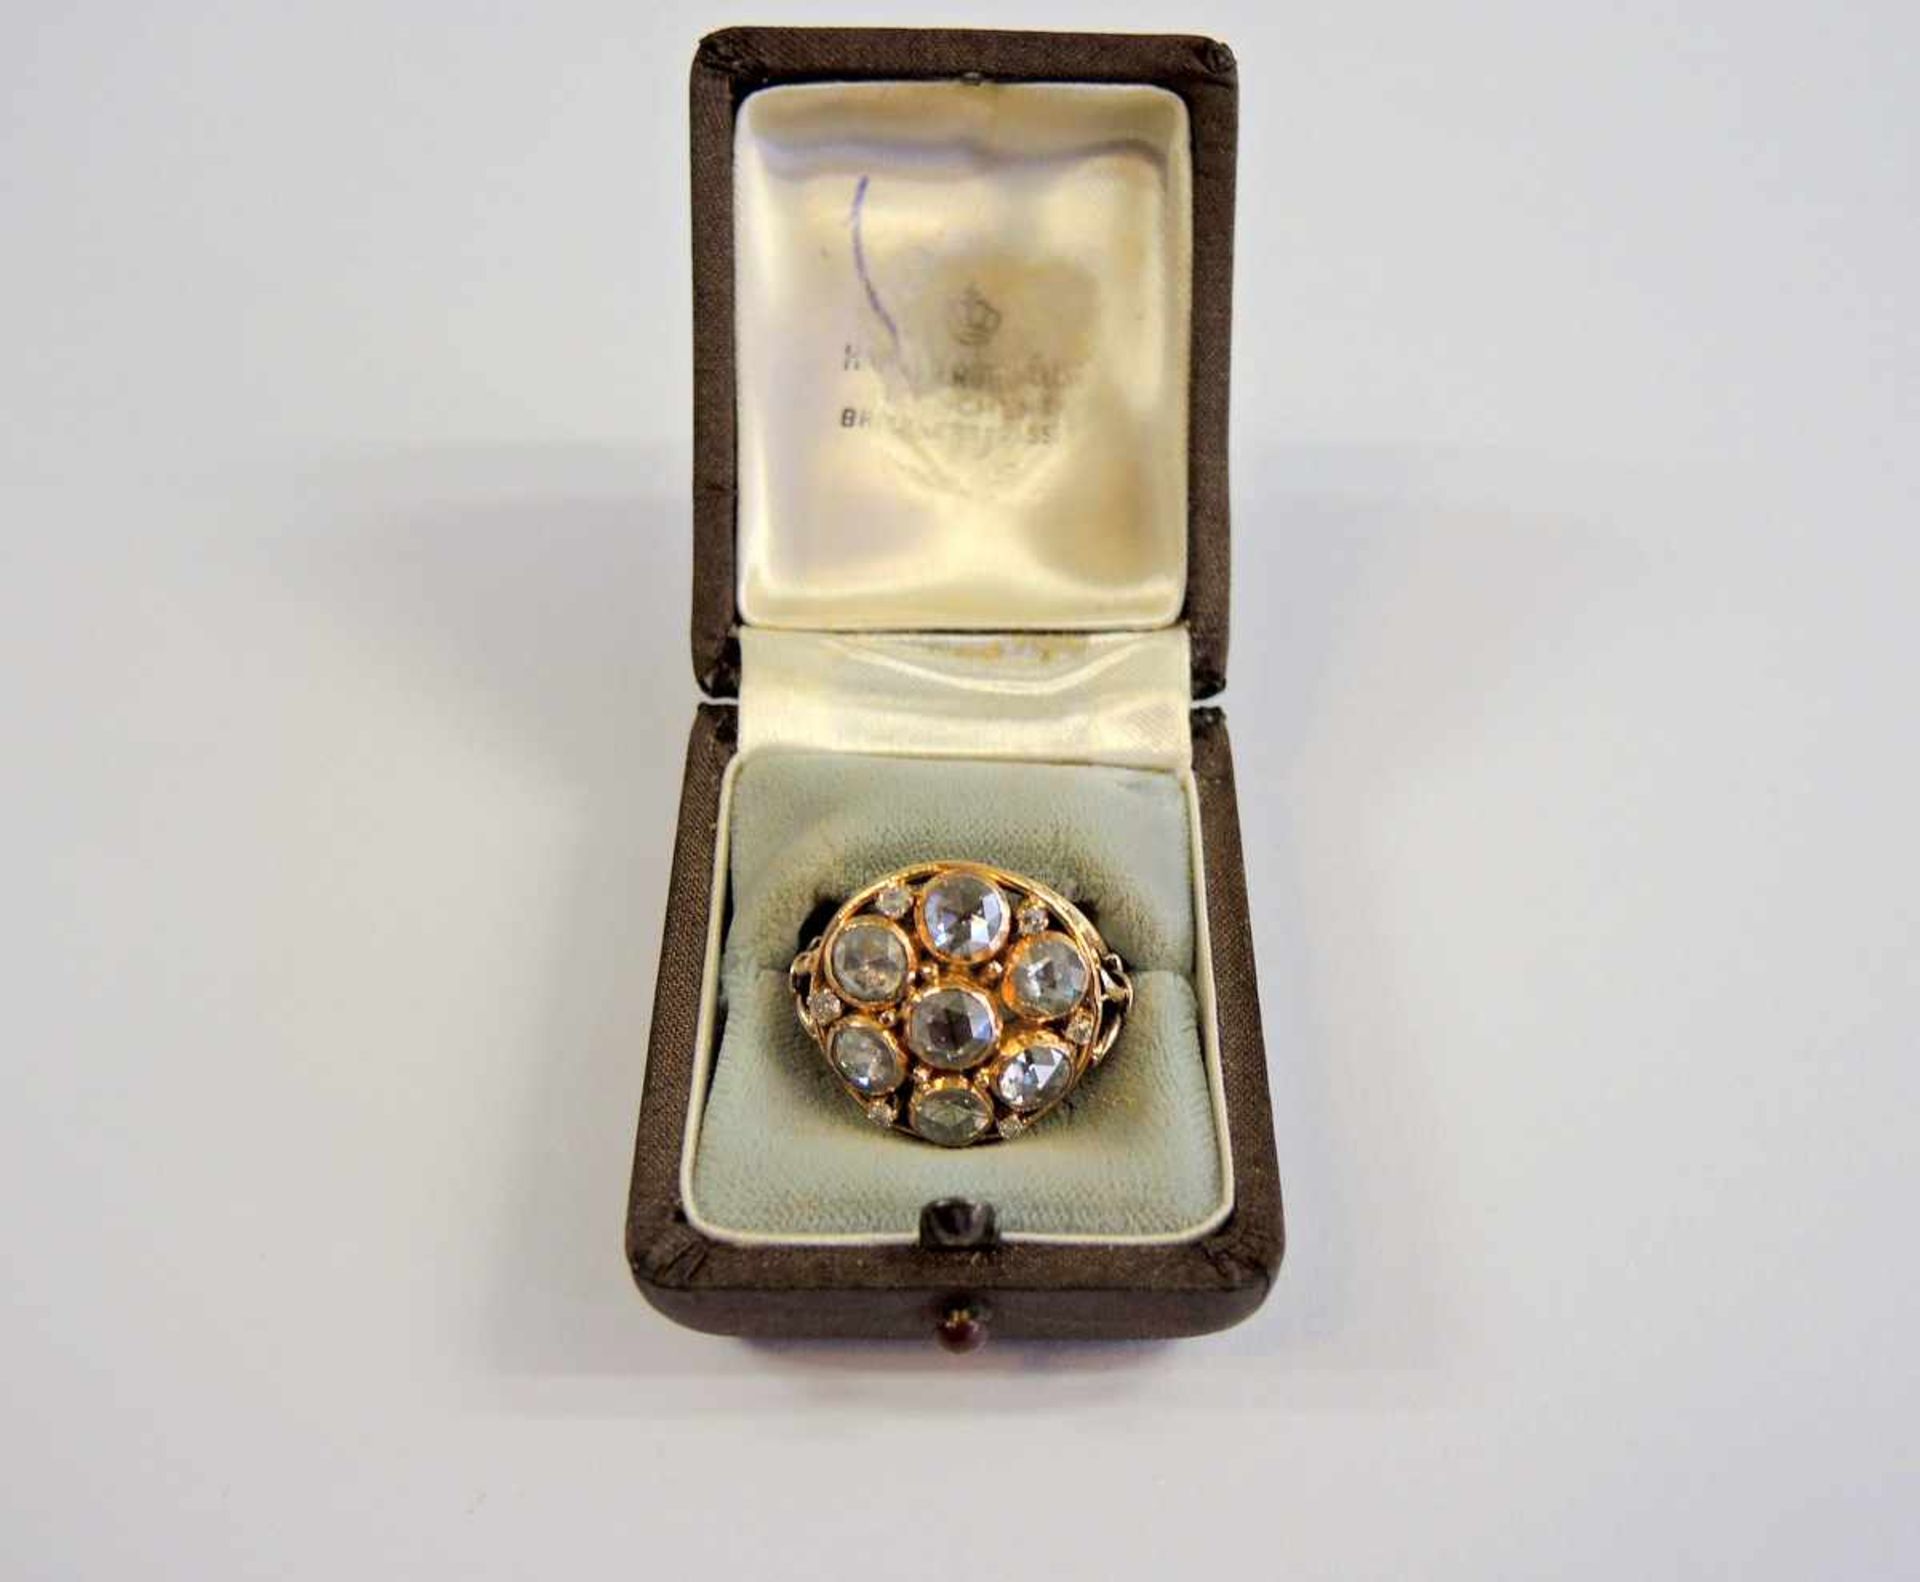 Großer Diamantrosen-Ring14 K. Gelbgold-Fassung mit Diamantrosenbesatz von ca. 4,5 ct. In guter, - Bild 3 aus 3